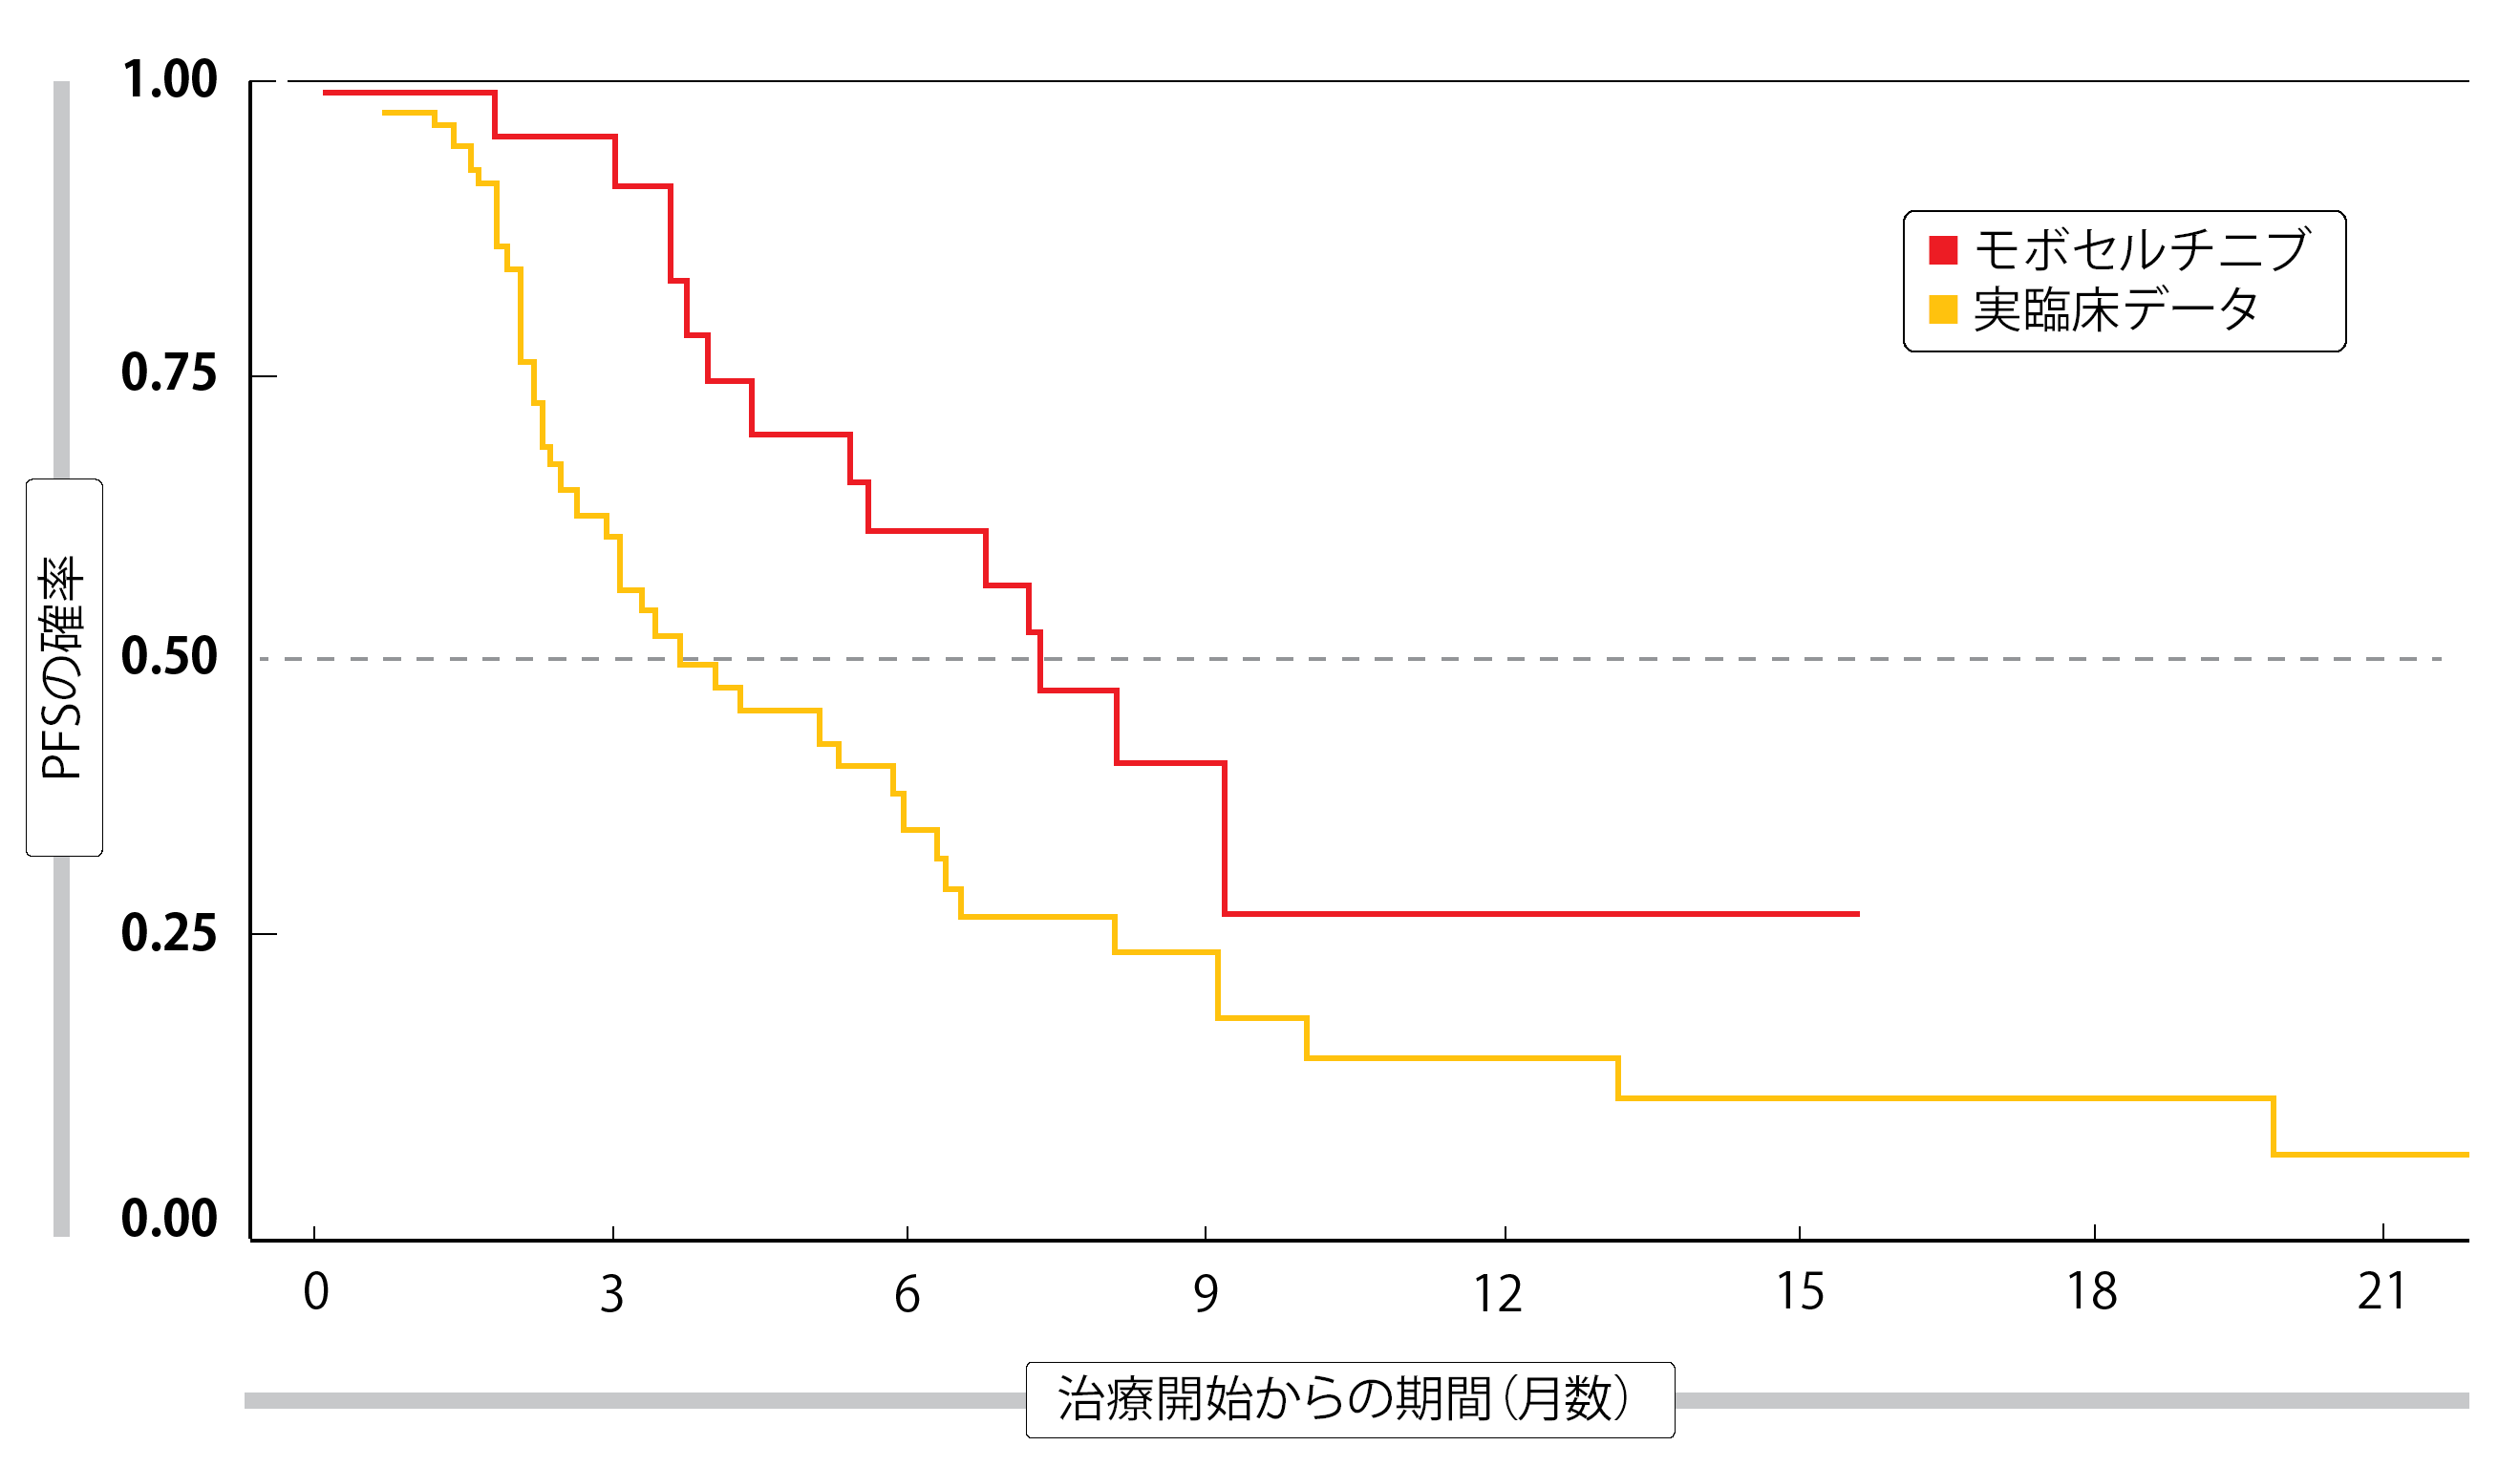 図2：EGFR 遺伝子エクソン20挿入を有するNSCLC患者に対するモボセルチニブを実臨床での他の治療結果と比較したときの無増悪生存期間の改善